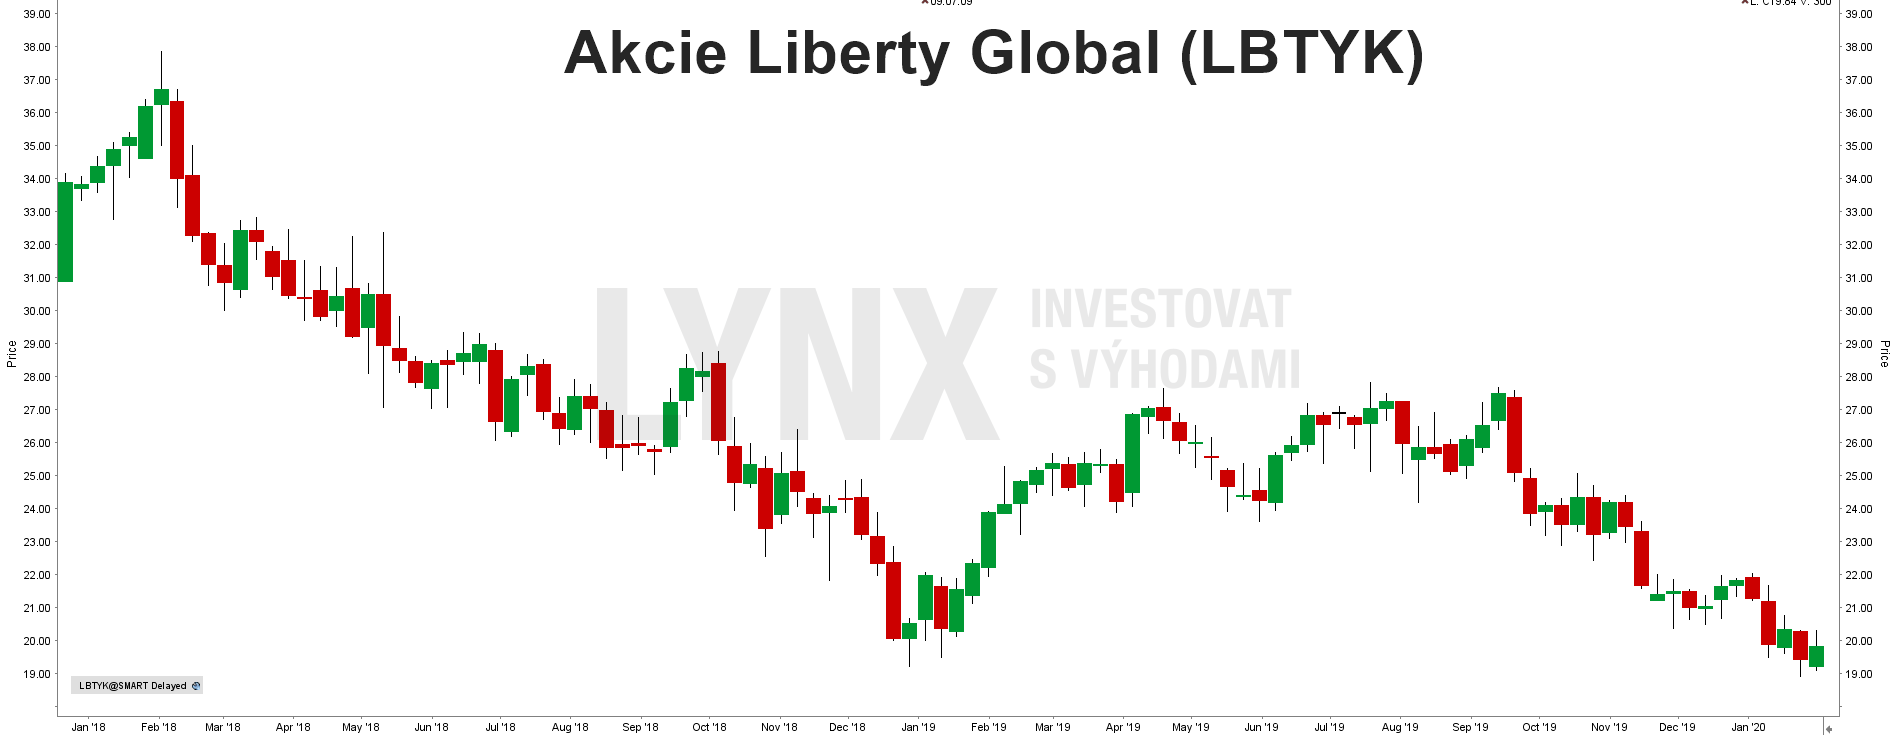 Akcie Liberty Global